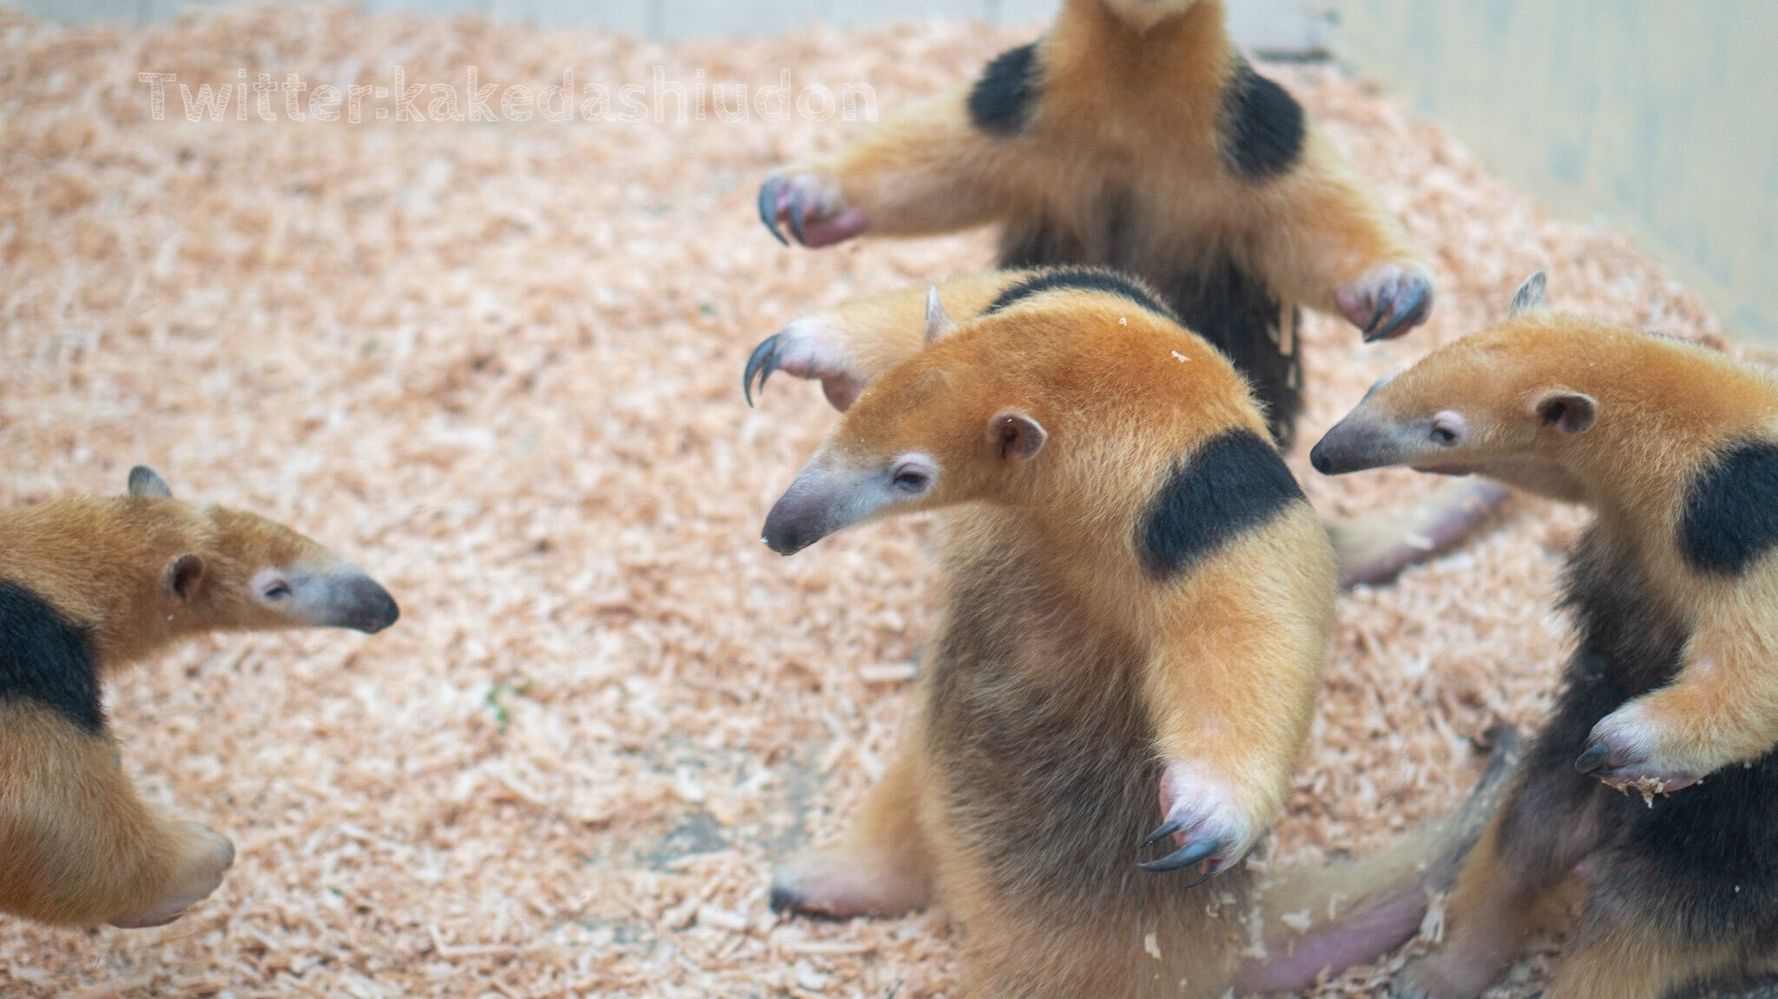 4匹のミナミコアリクイが仁王立ちで威嚇のポーズ 動物園で撮影された 奇跡の1枚 がこれだ ハフポスト News